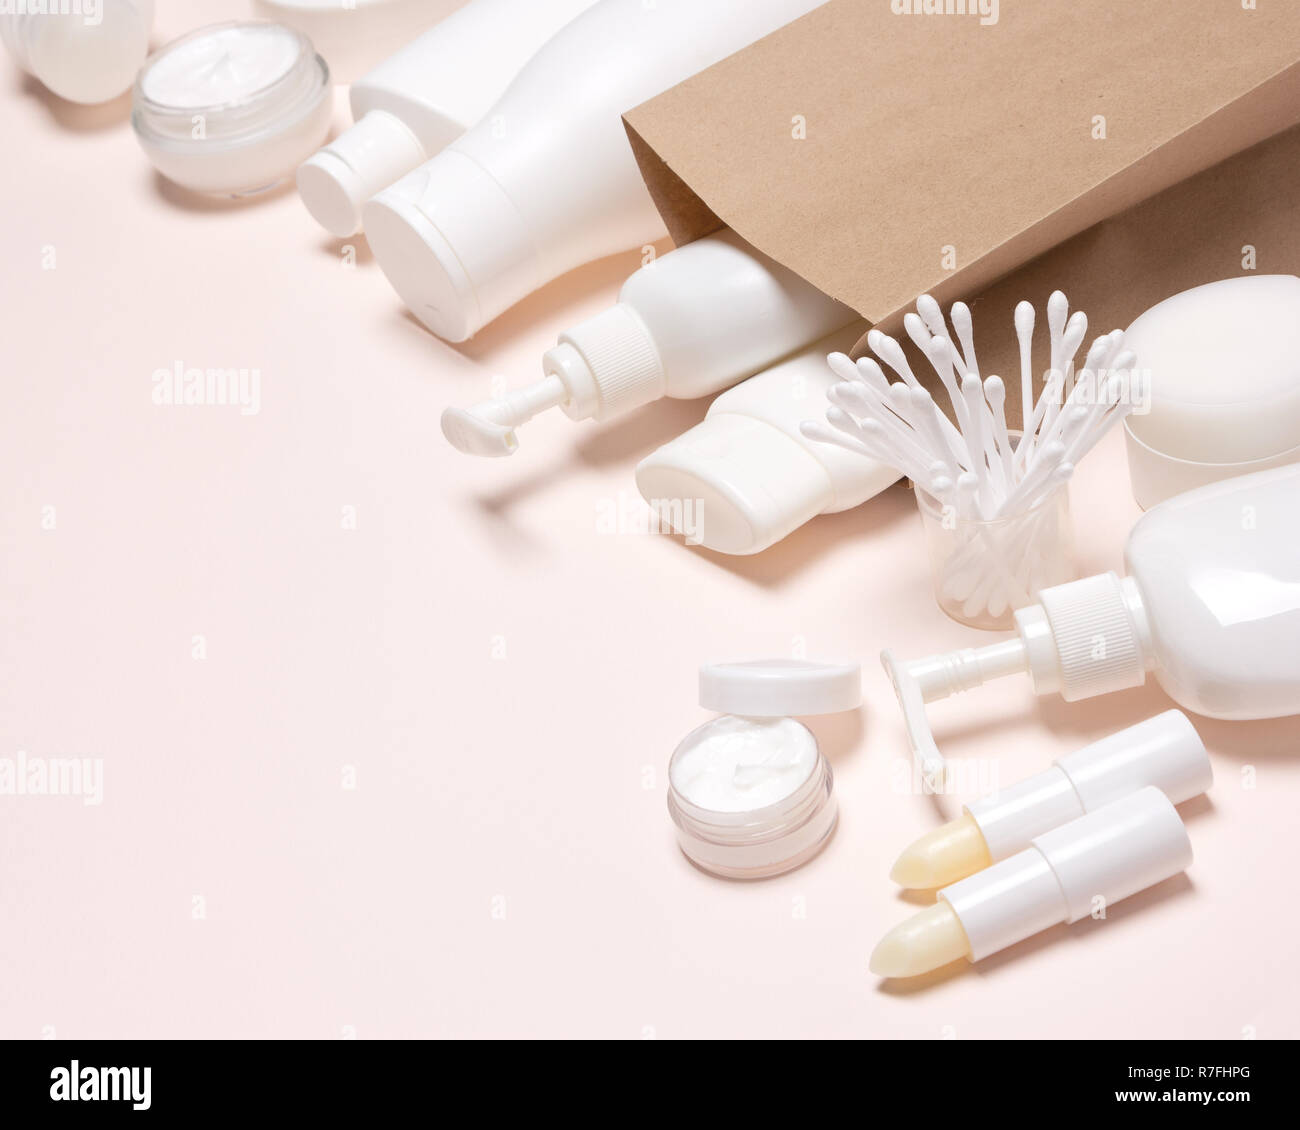 Les produits cosmétiques de papier kraft sac de marchandises. Selective focus, copy space Banque D'Images